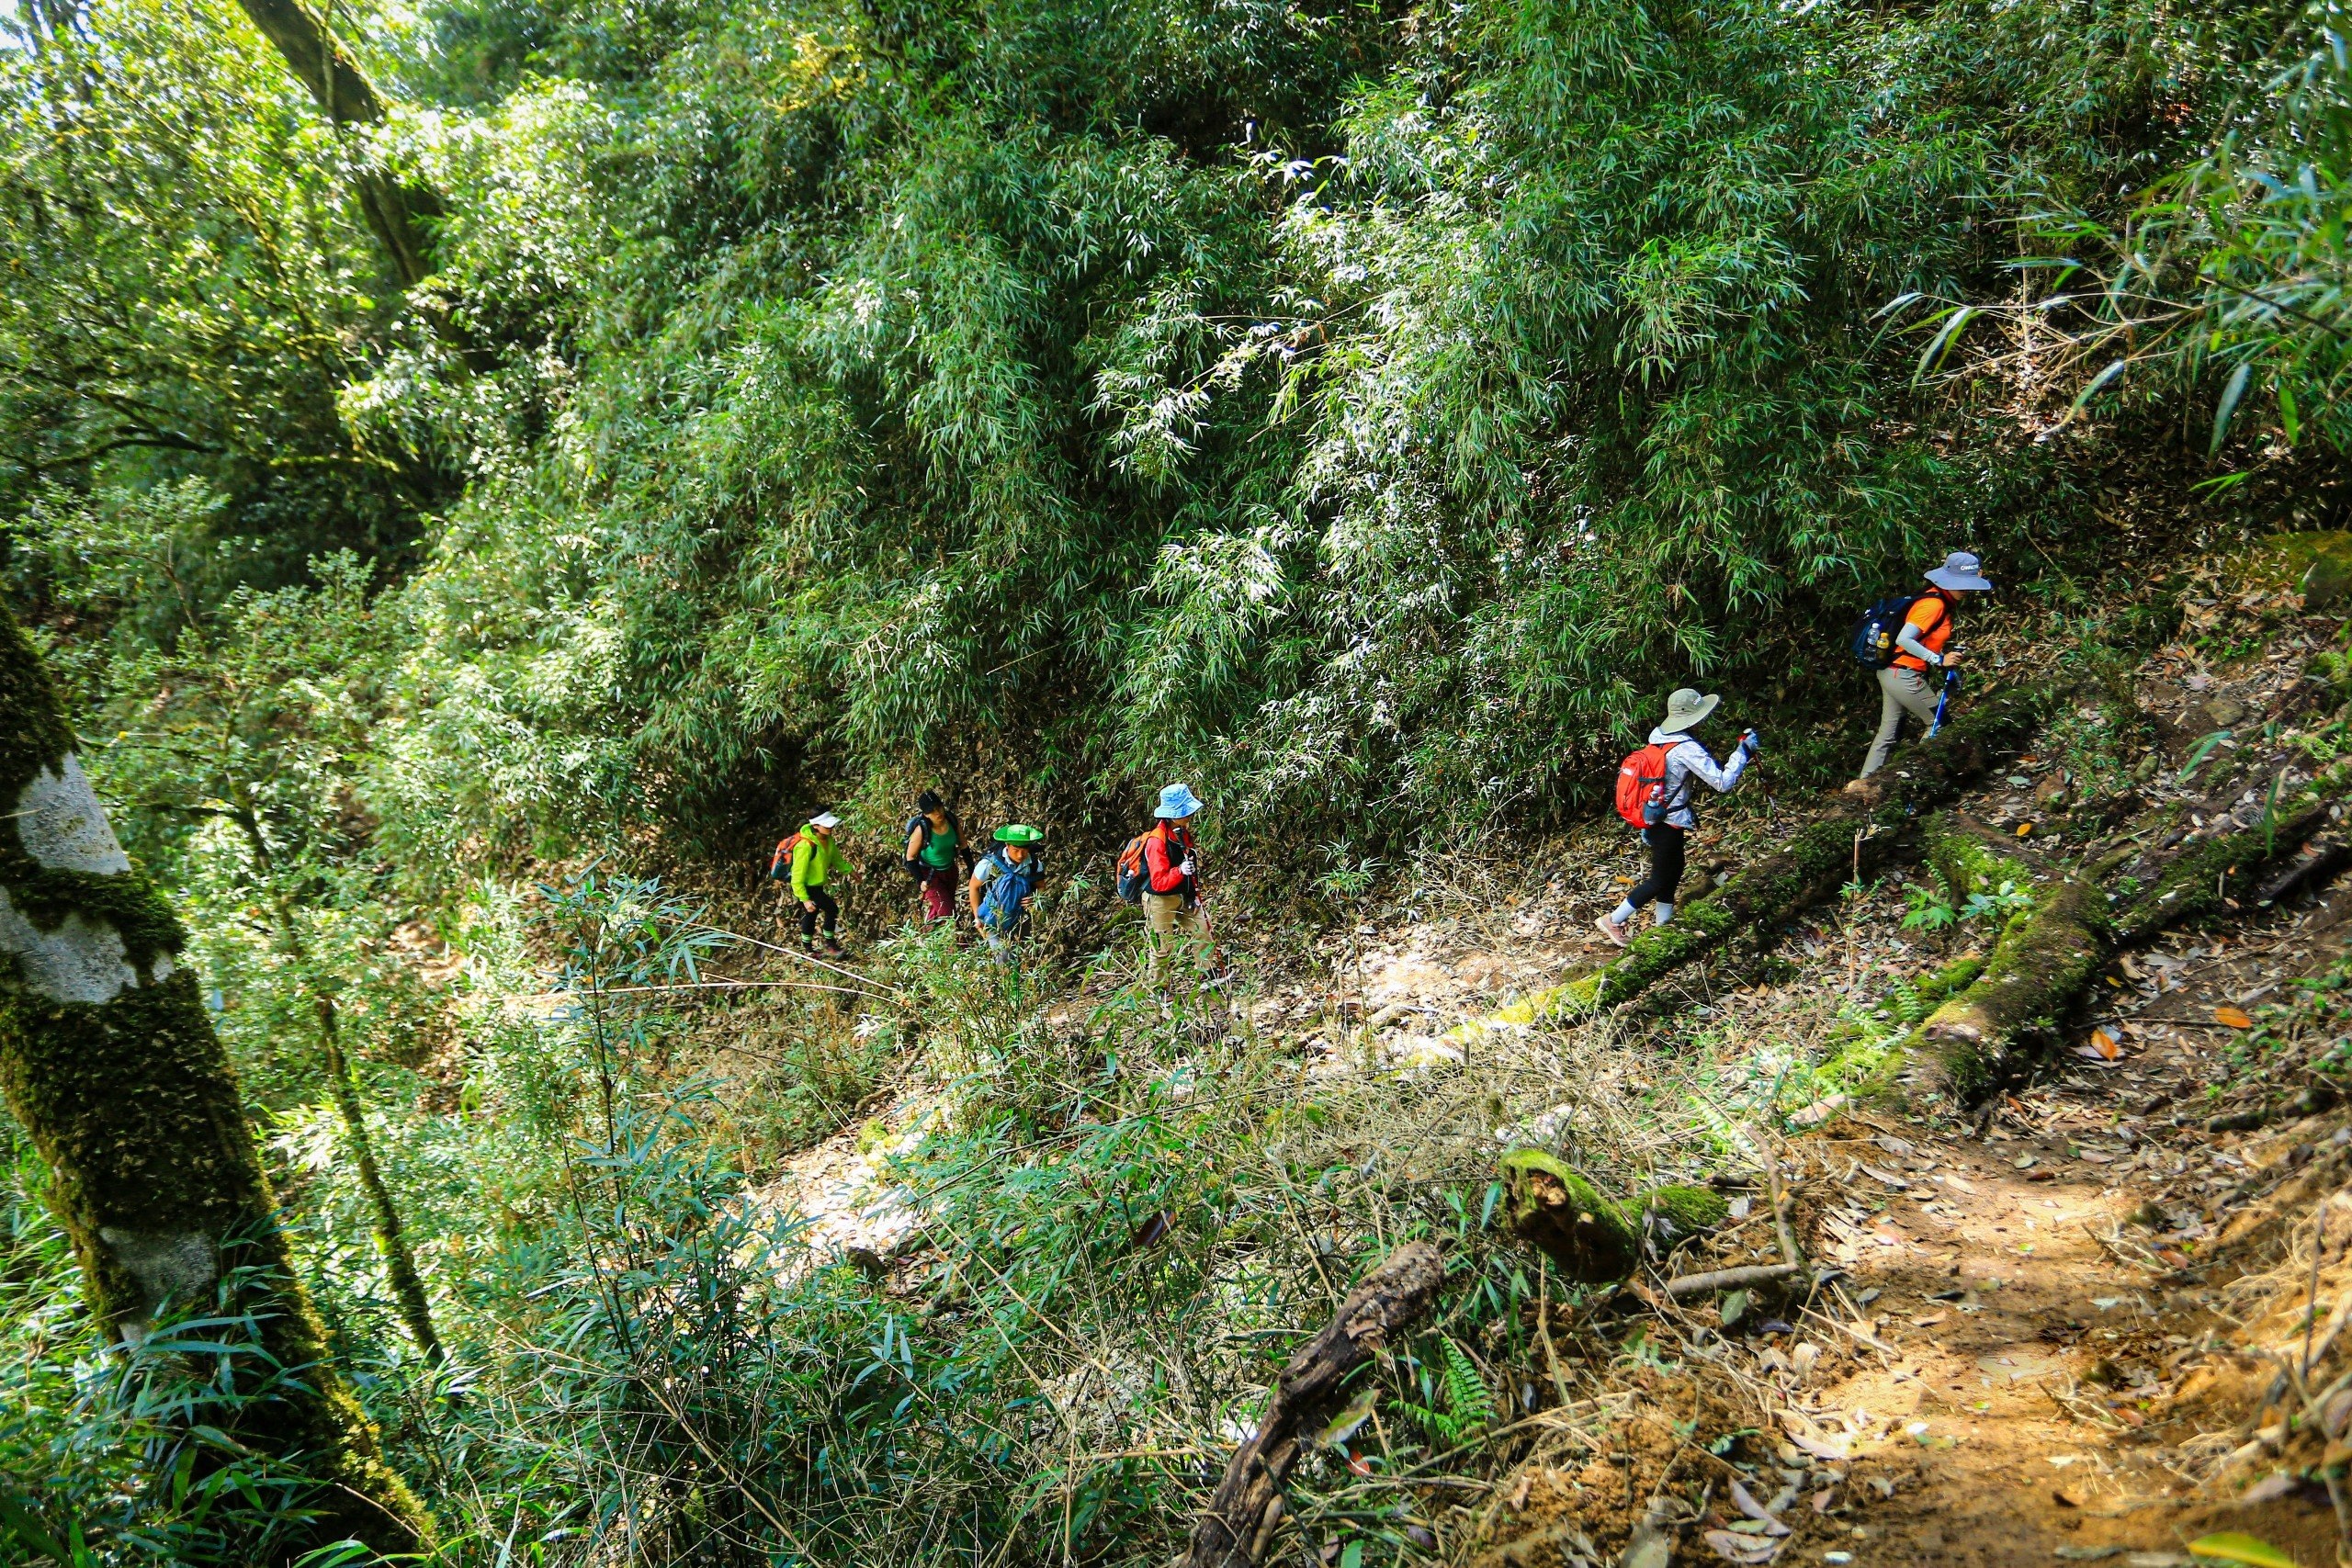 View - Ngắm nhìn khu rừng nguyên sinh đẹp như cổ tích trên đỉnh núi mới ở Tà Xùa | Báo Dân trí